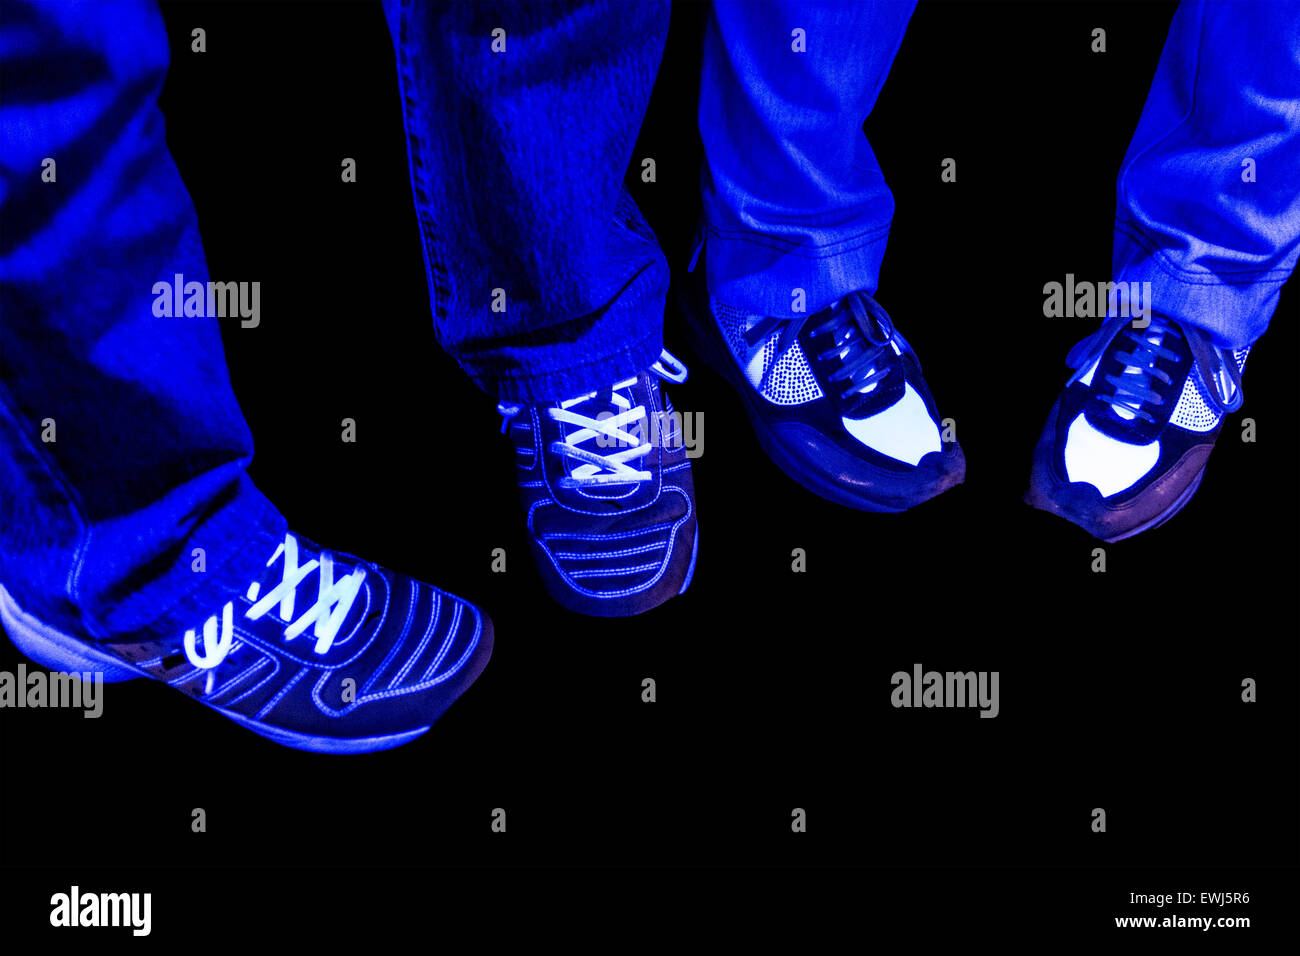 Disco shoes immagini e fotografie stock ad alta risoluzione - Alamy